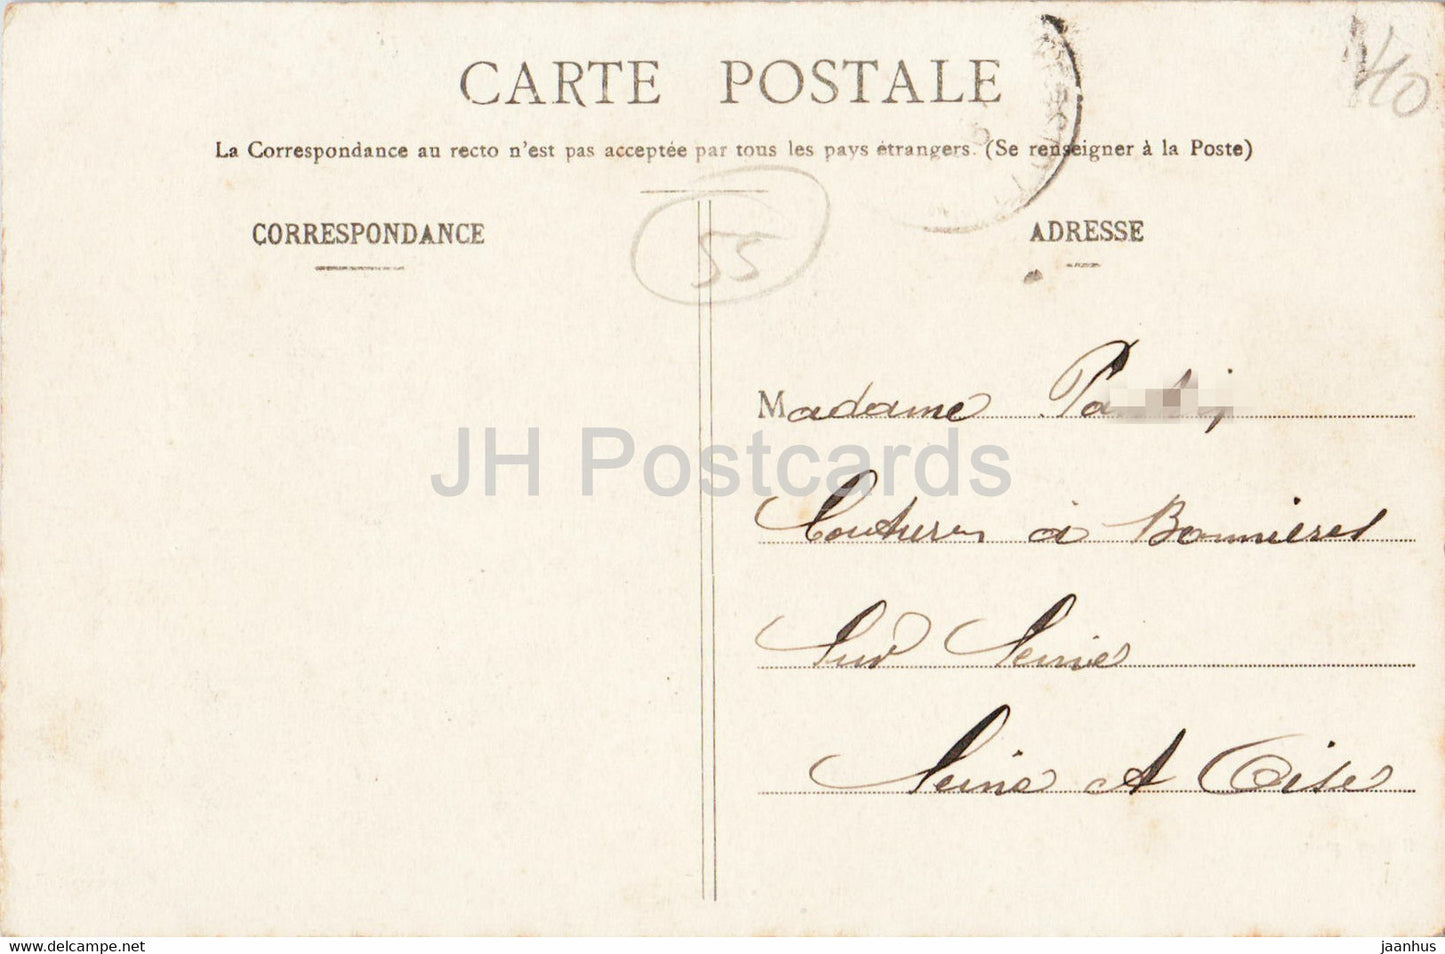 St. Mihiel - Le Pont - Les Capucins - A Motlet - Brücke - alte Postkarte - 1905 - Frankreich - gebraucht